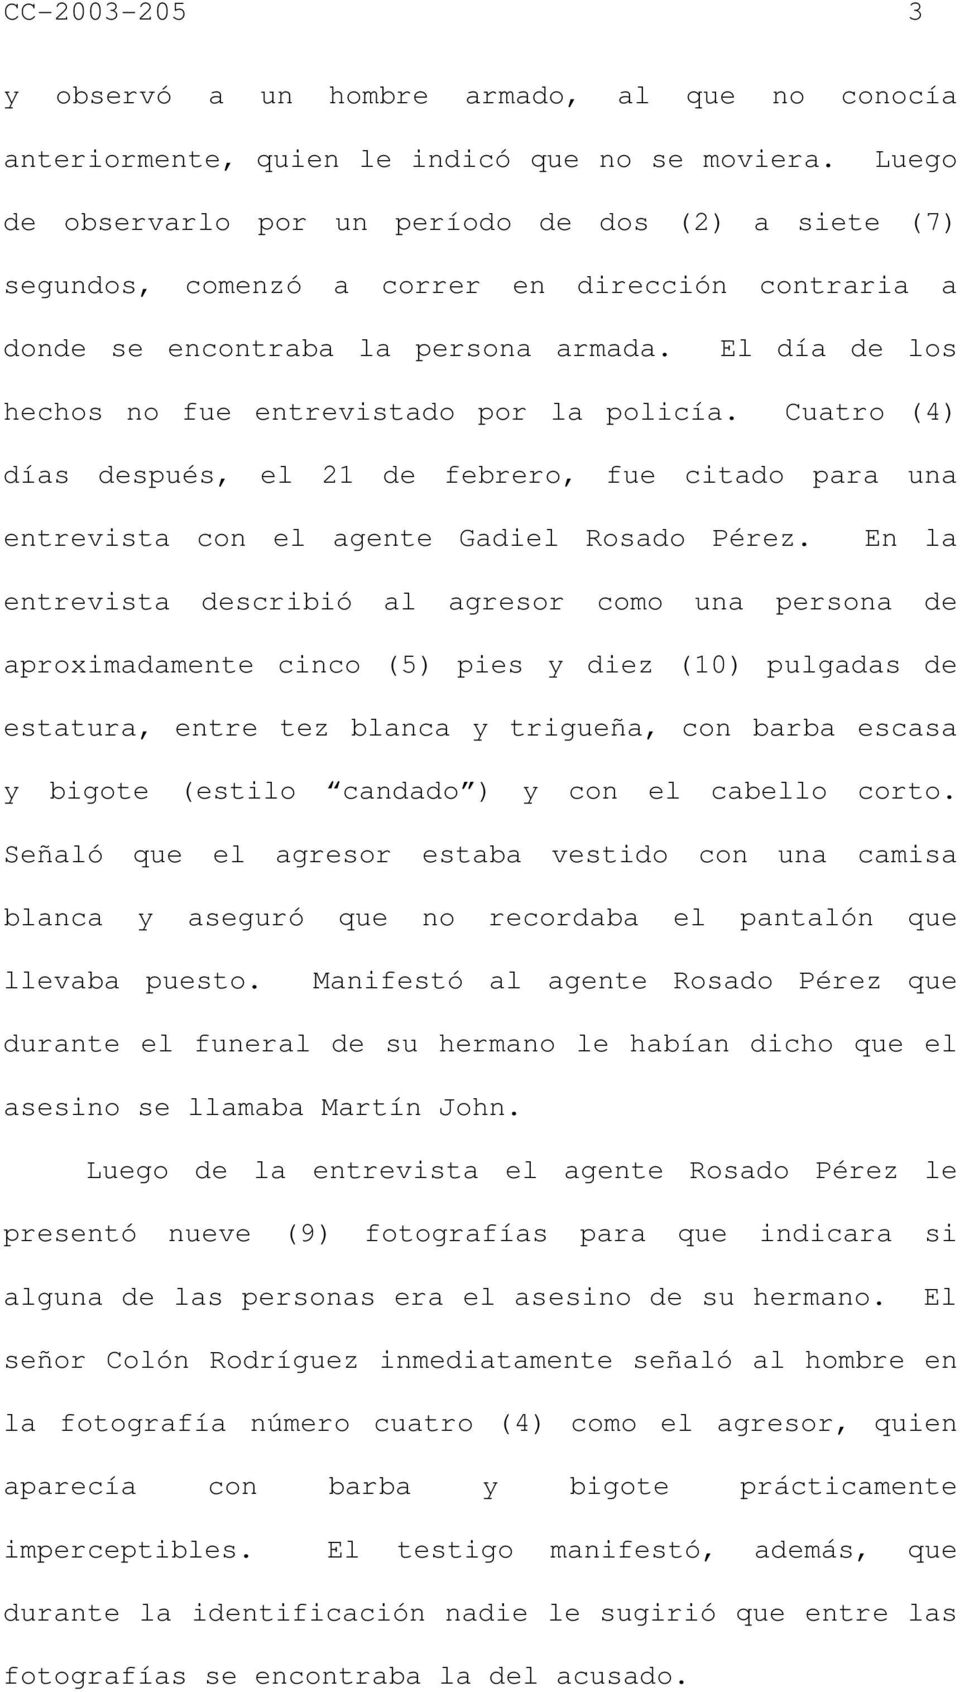 El día de los hechos no fue entrevistado por la policía. Cuatro (4) días después, el 21 de febrero, fue citado para una entrevista con el agente Gadiel Rosado Pérez.